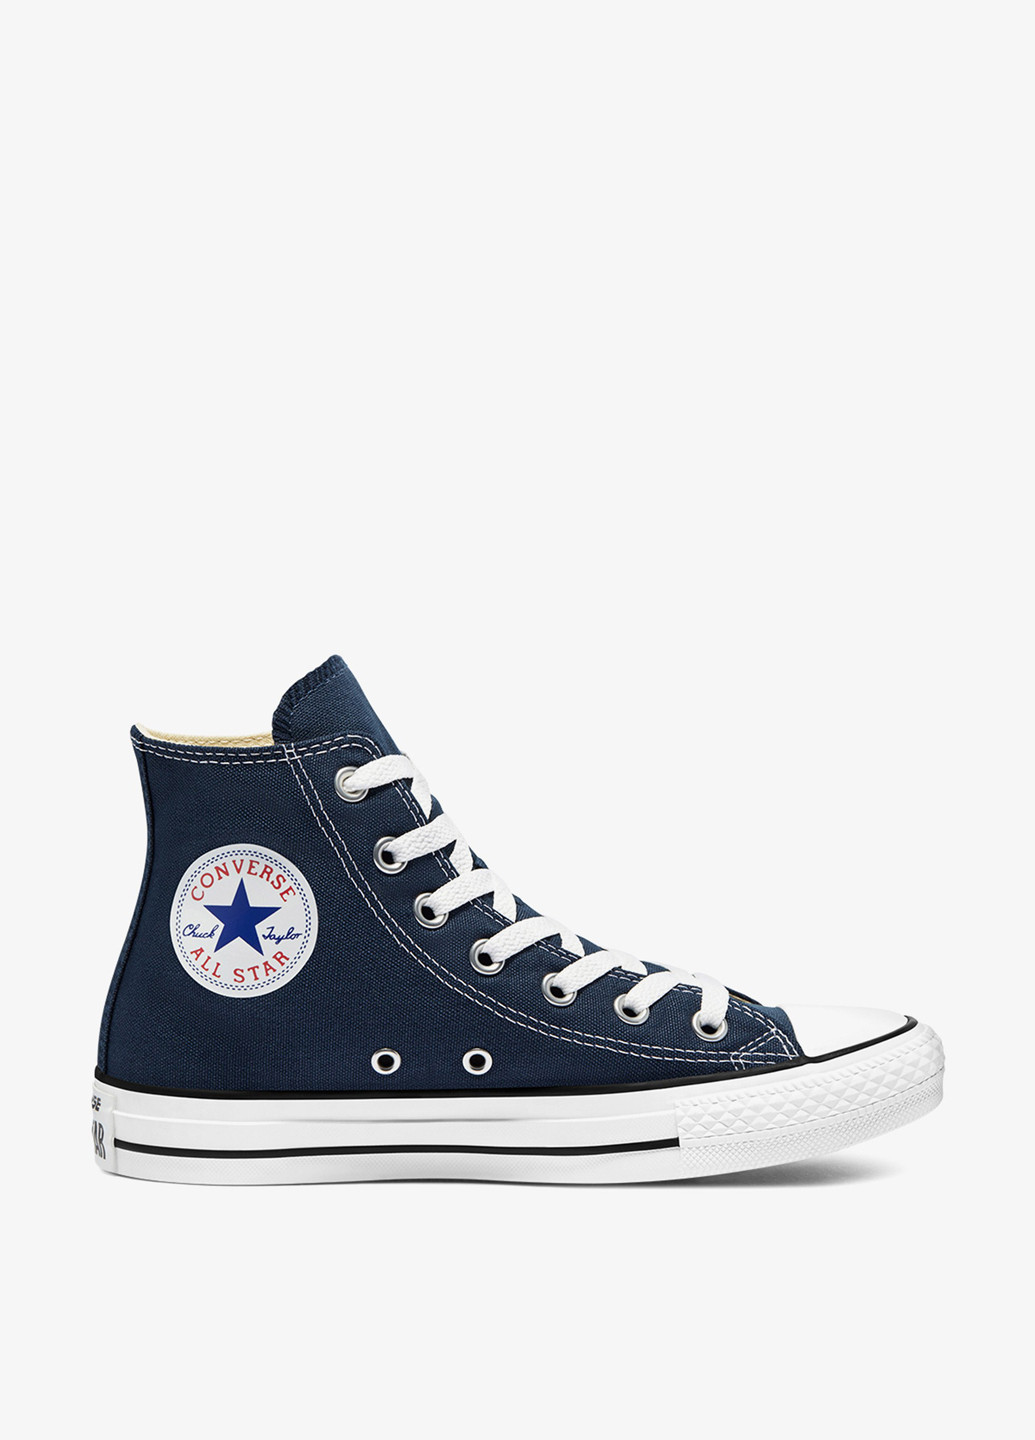 Темно-синие кеды Converse CHUCK TAYLOR ALL STAR люверсы, с логотипом